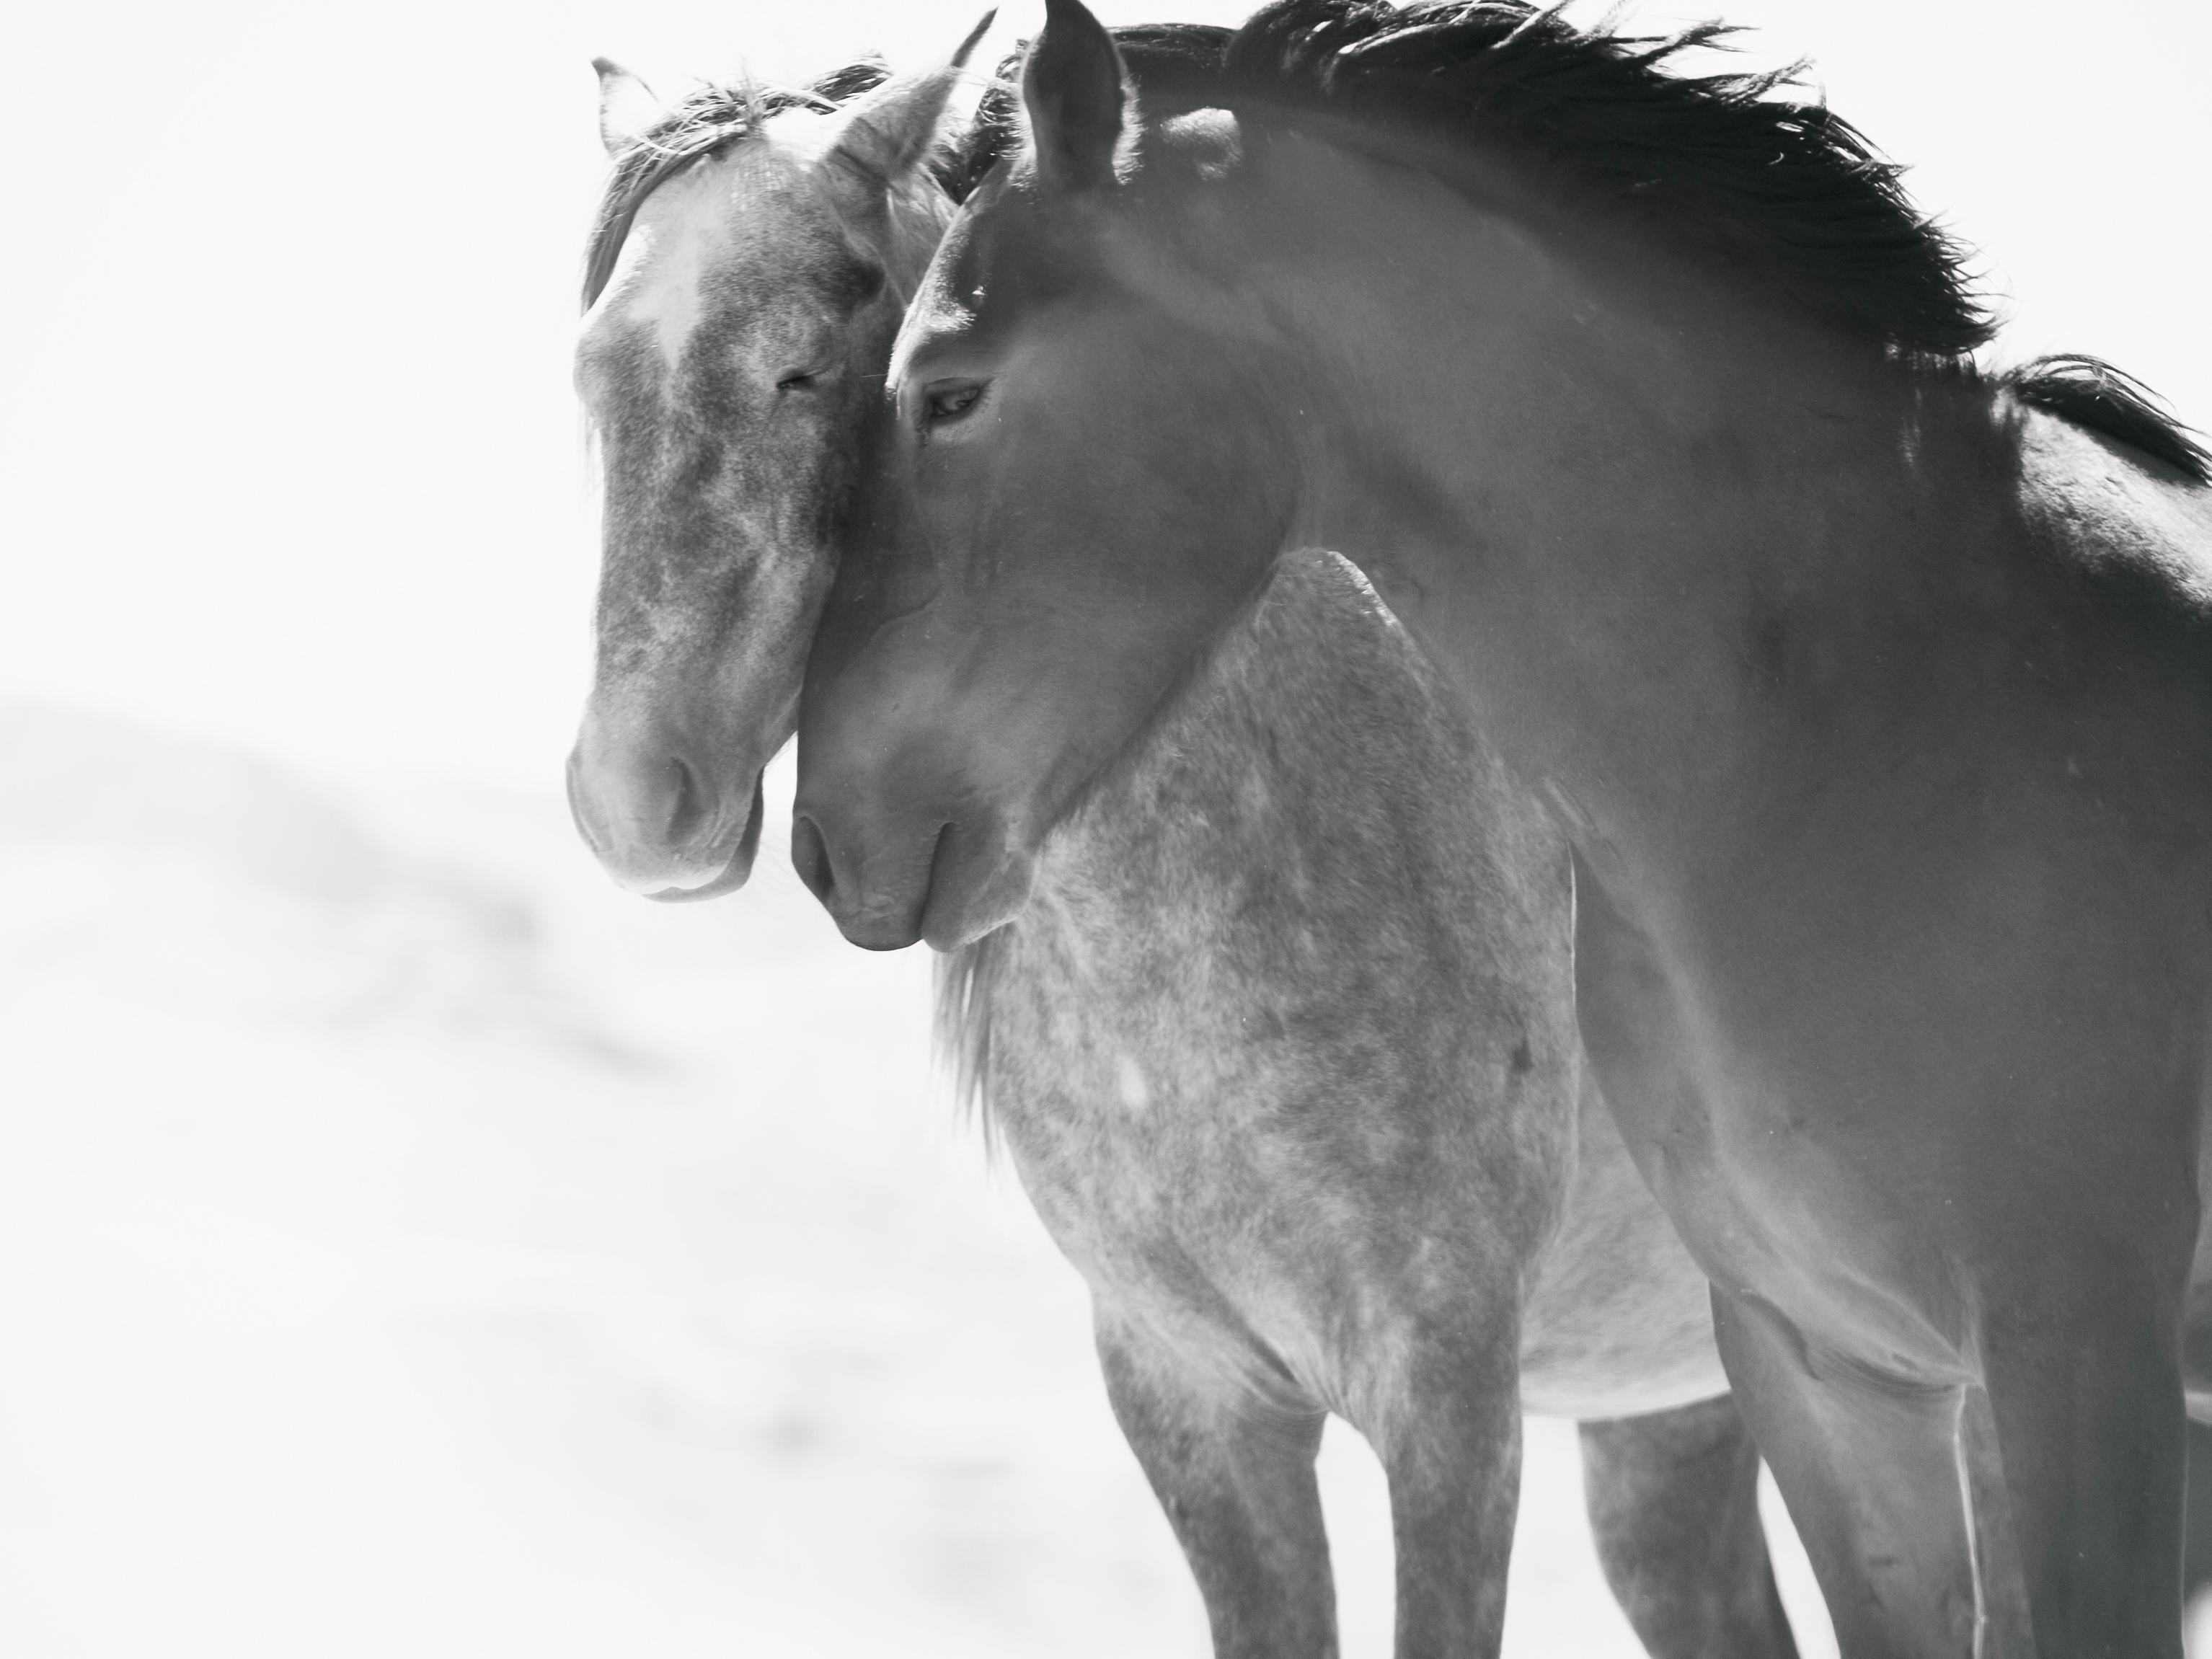 Black and White Photograph Shane Russeck -  Soulmates 36x48 Photographie en noir et blanc de chevaux sauvages Photographie de Mustang